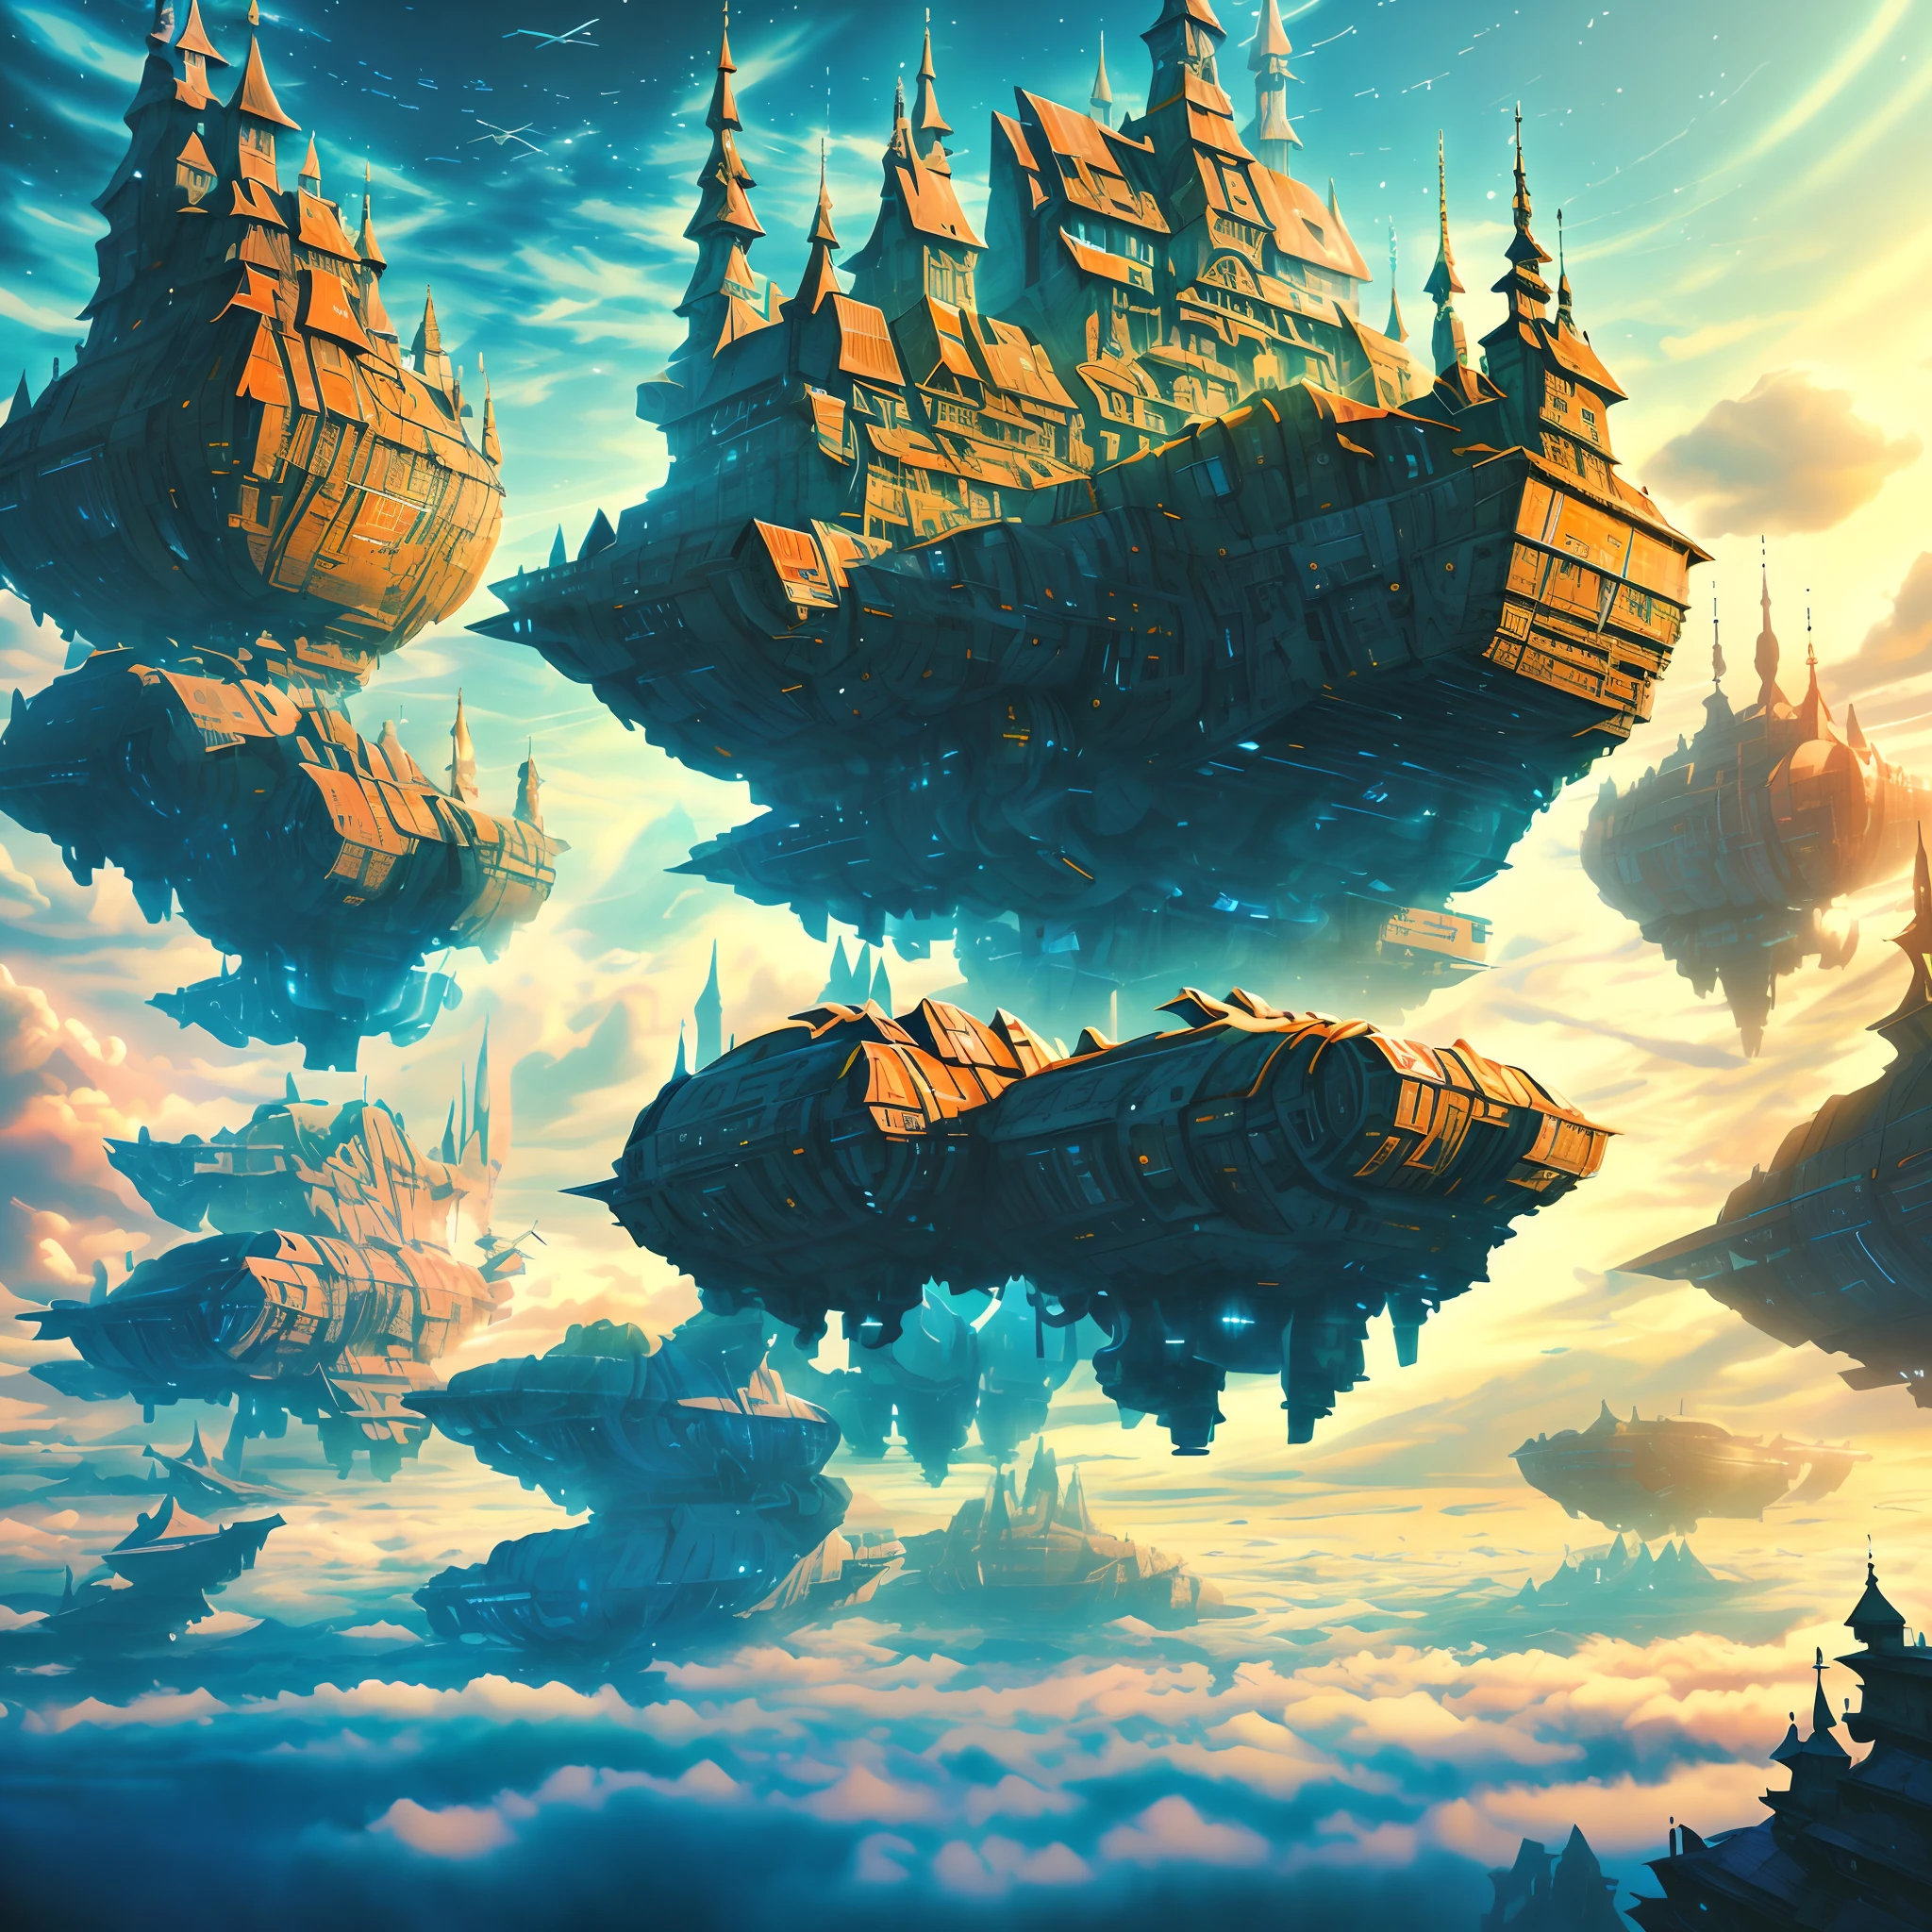 斯塔维德城堡人工智能战斗机甲，在雲層之上，星際航行，巨大的高科技浮動哥德式城堡，在雲層之上，巨大的移動哥德式城堡，漂浮的哥德式城堡，(雲海:1.3)，未来派女性未来派浮动城堡与未来派未来派浮动城堡背景, 靈感來自馬雷克·奧康, 美麗的科幻藝術, 科幻數位藝術插畫, 數位賽博朋克藝術, 科幻數位繪畫, 未來主義數位繪畫, 未來主義概念藝術, 科幻漂浮城堡景观前, 科幻數位藝術, 先進的數位賽博龐克藝術, 夢幻賽博龐克女孩